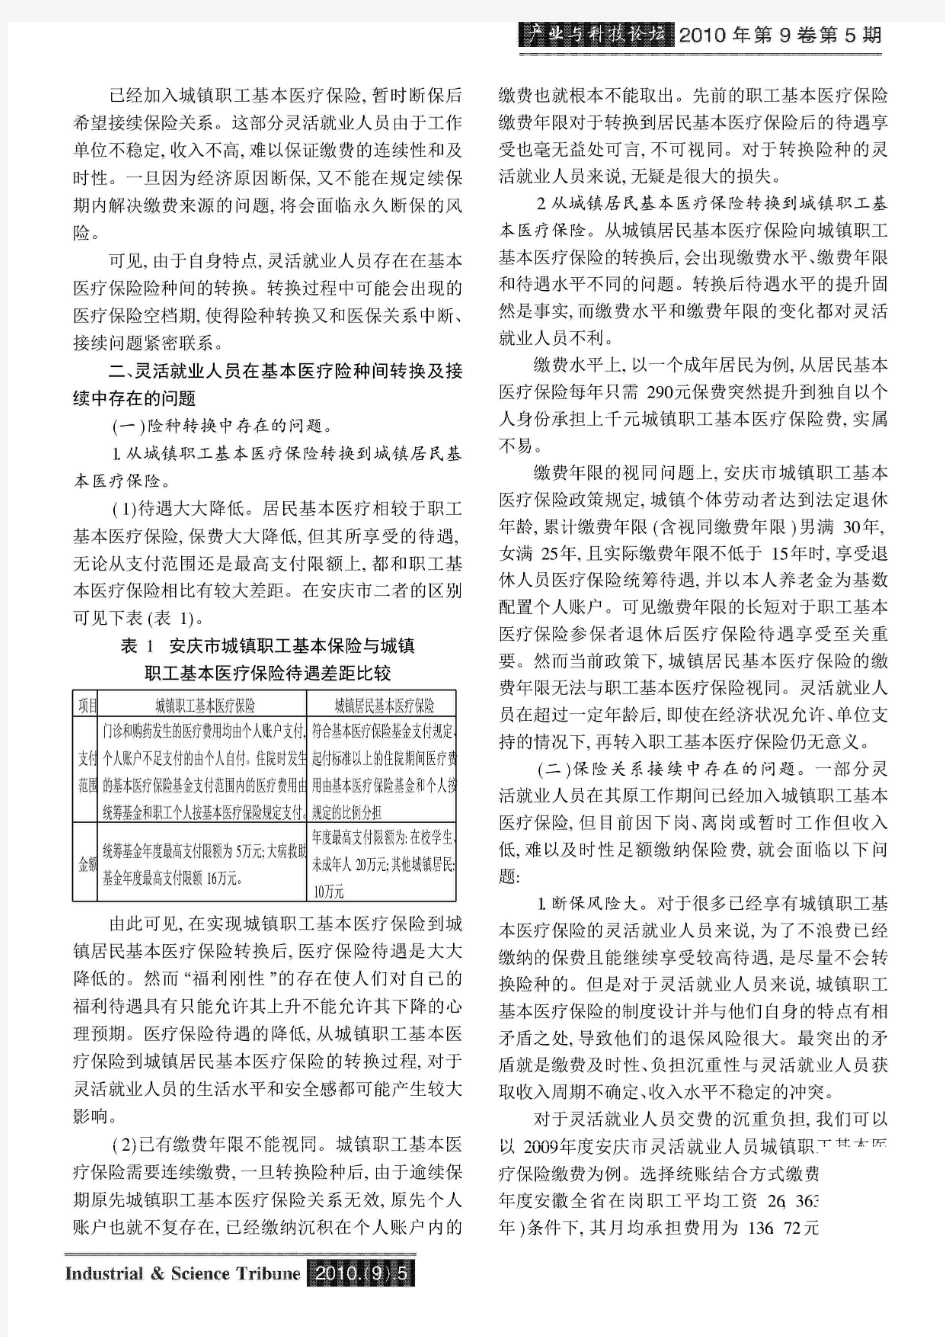 灵活就业人员基本医疗保险险种转换及接续问题——以安徽省安庆市为例